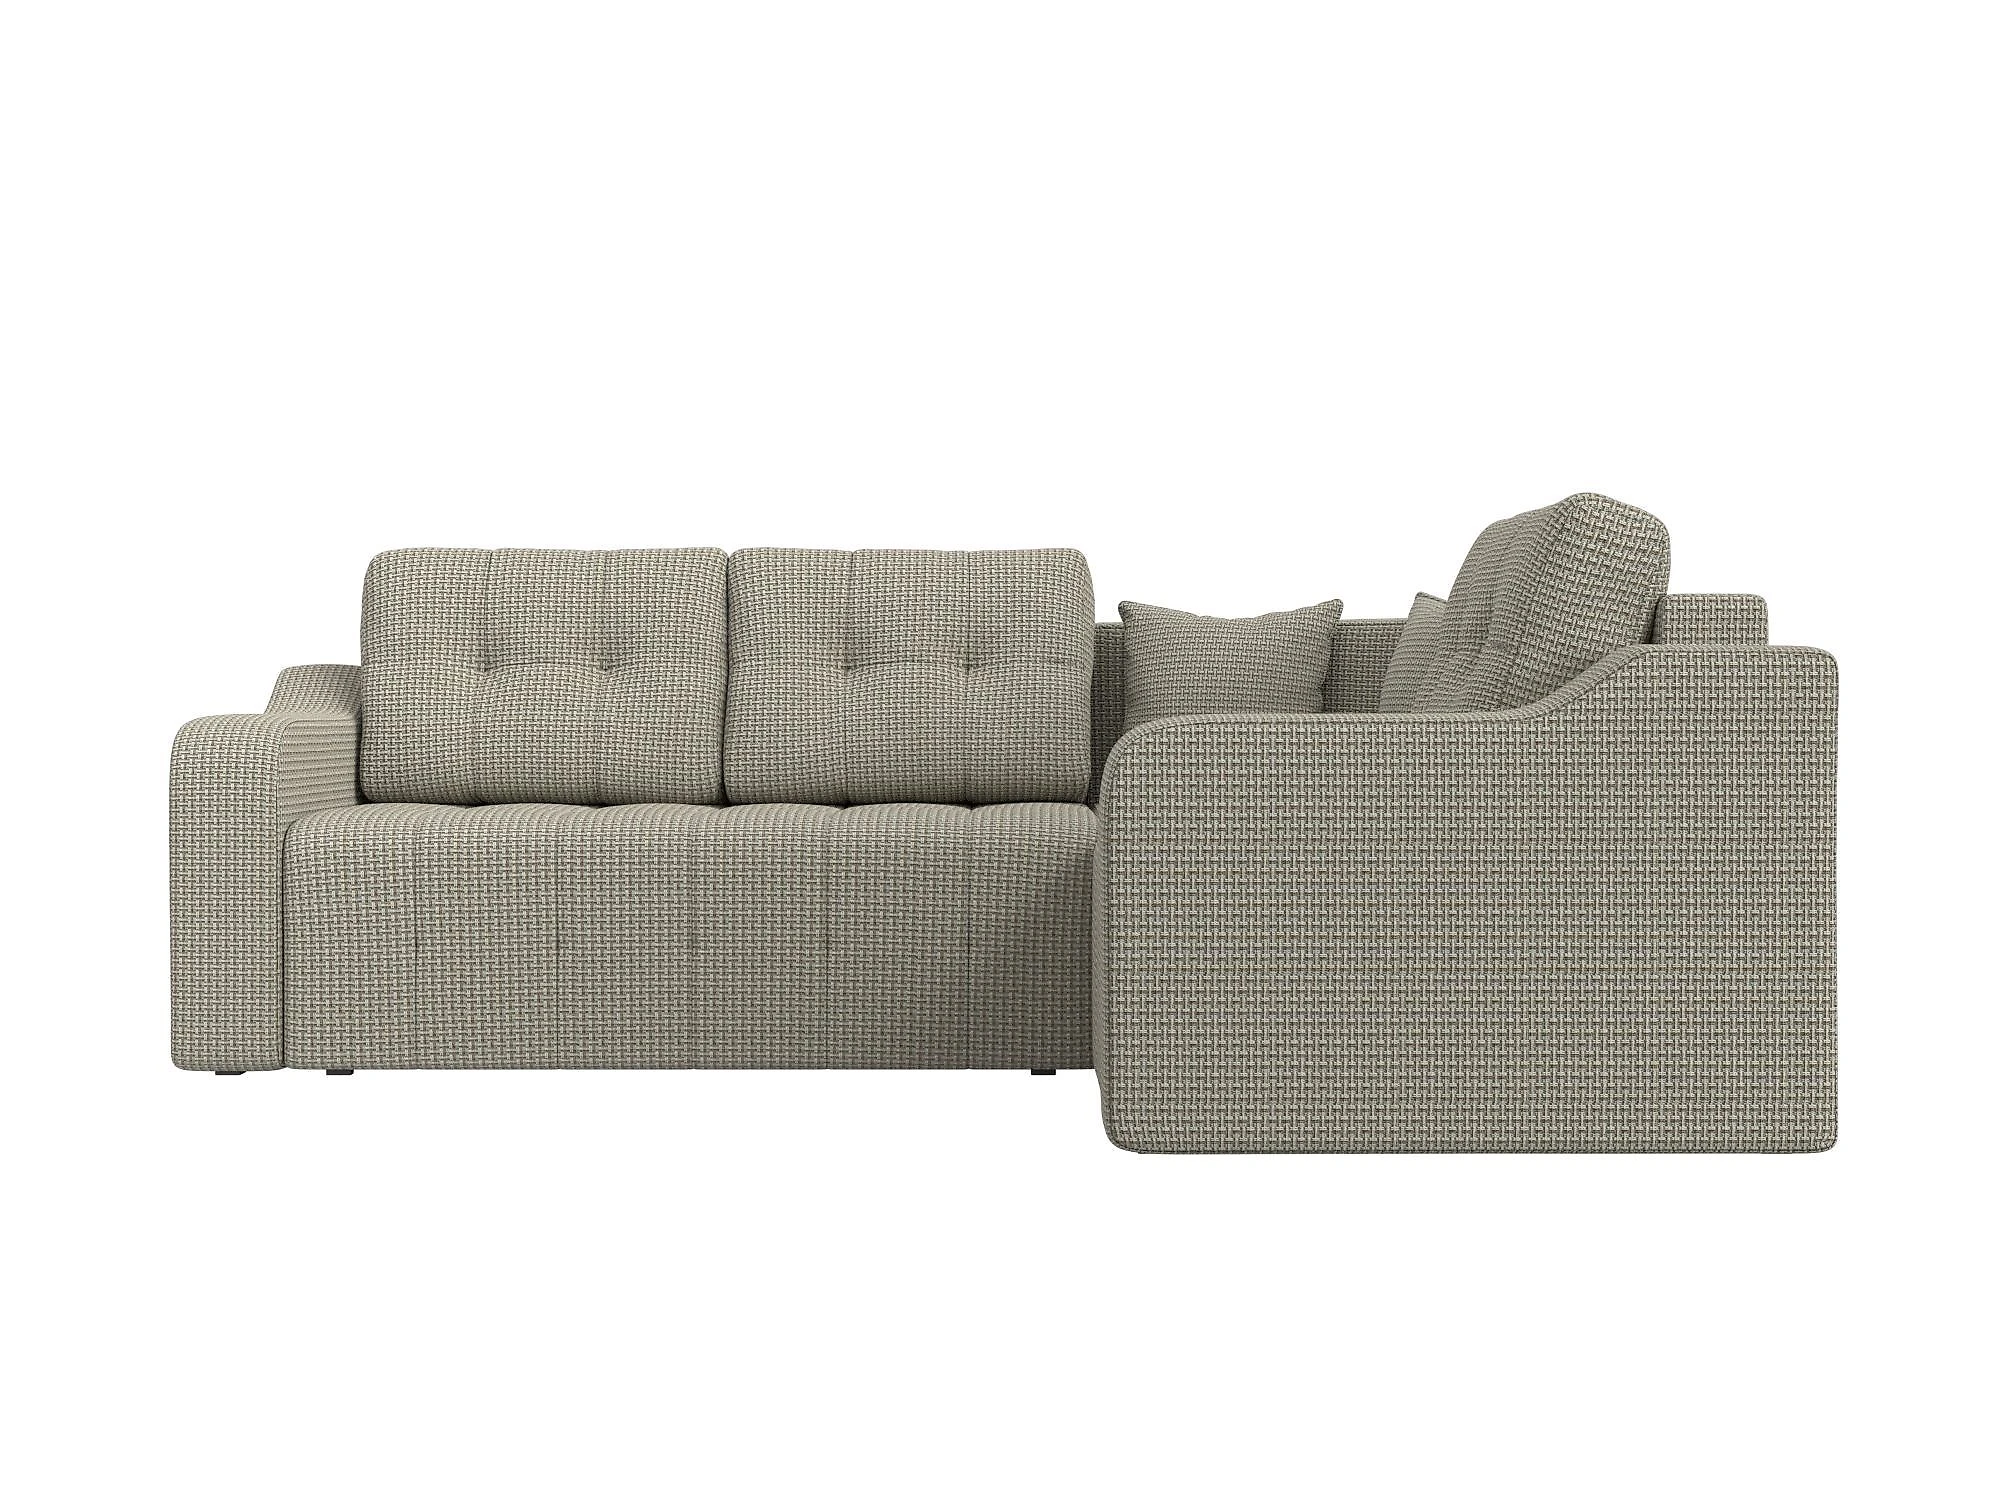  угловой диван из рогожки Кембридж Дизайн 13